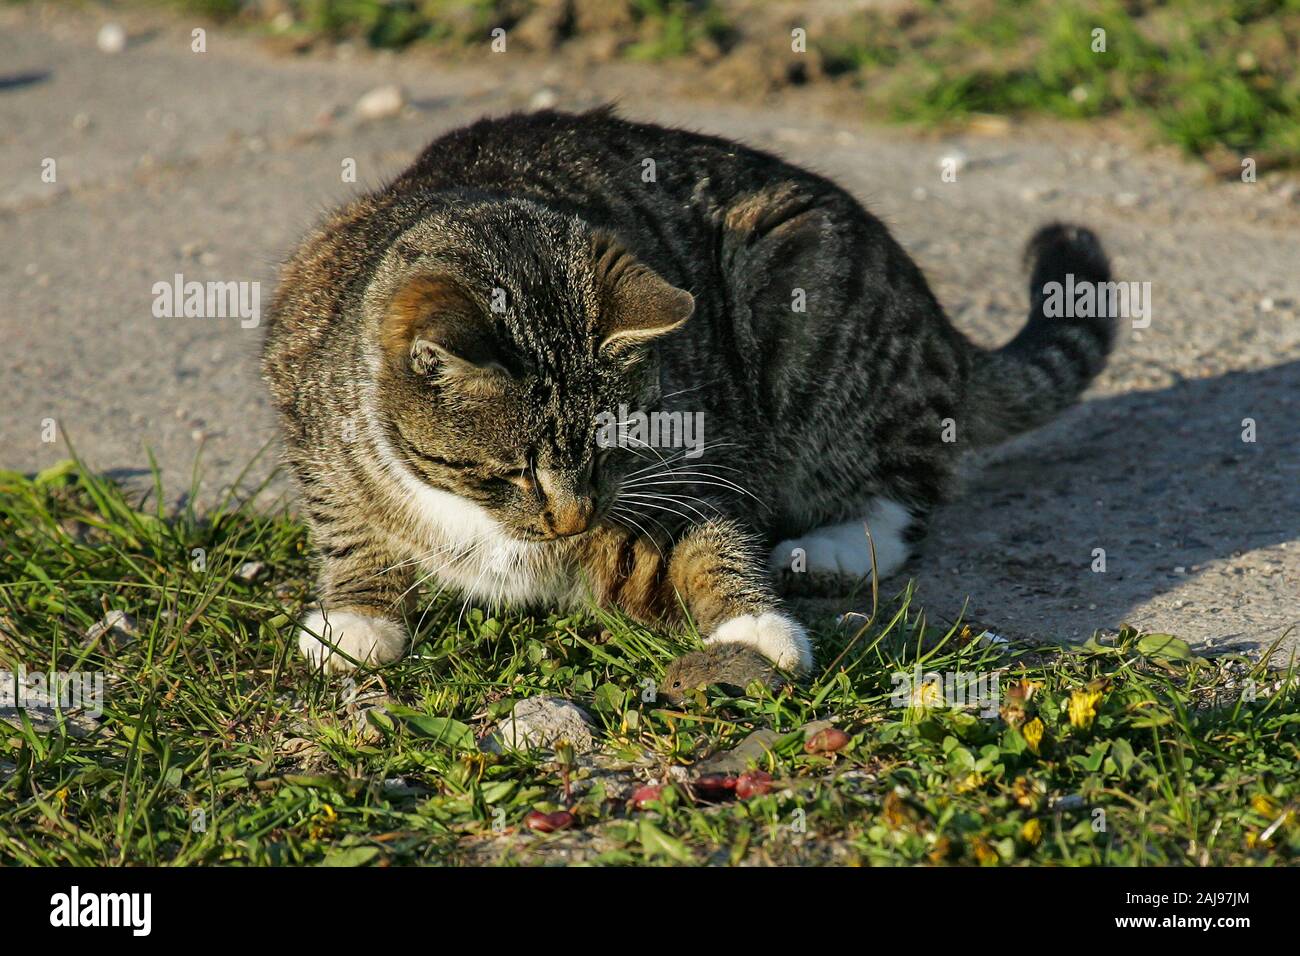 Los gatos domésticos (Felis catus), caza y jugar con Common Vole (Microtus arvalis), Brandeburgo, Alemania Foto de stock